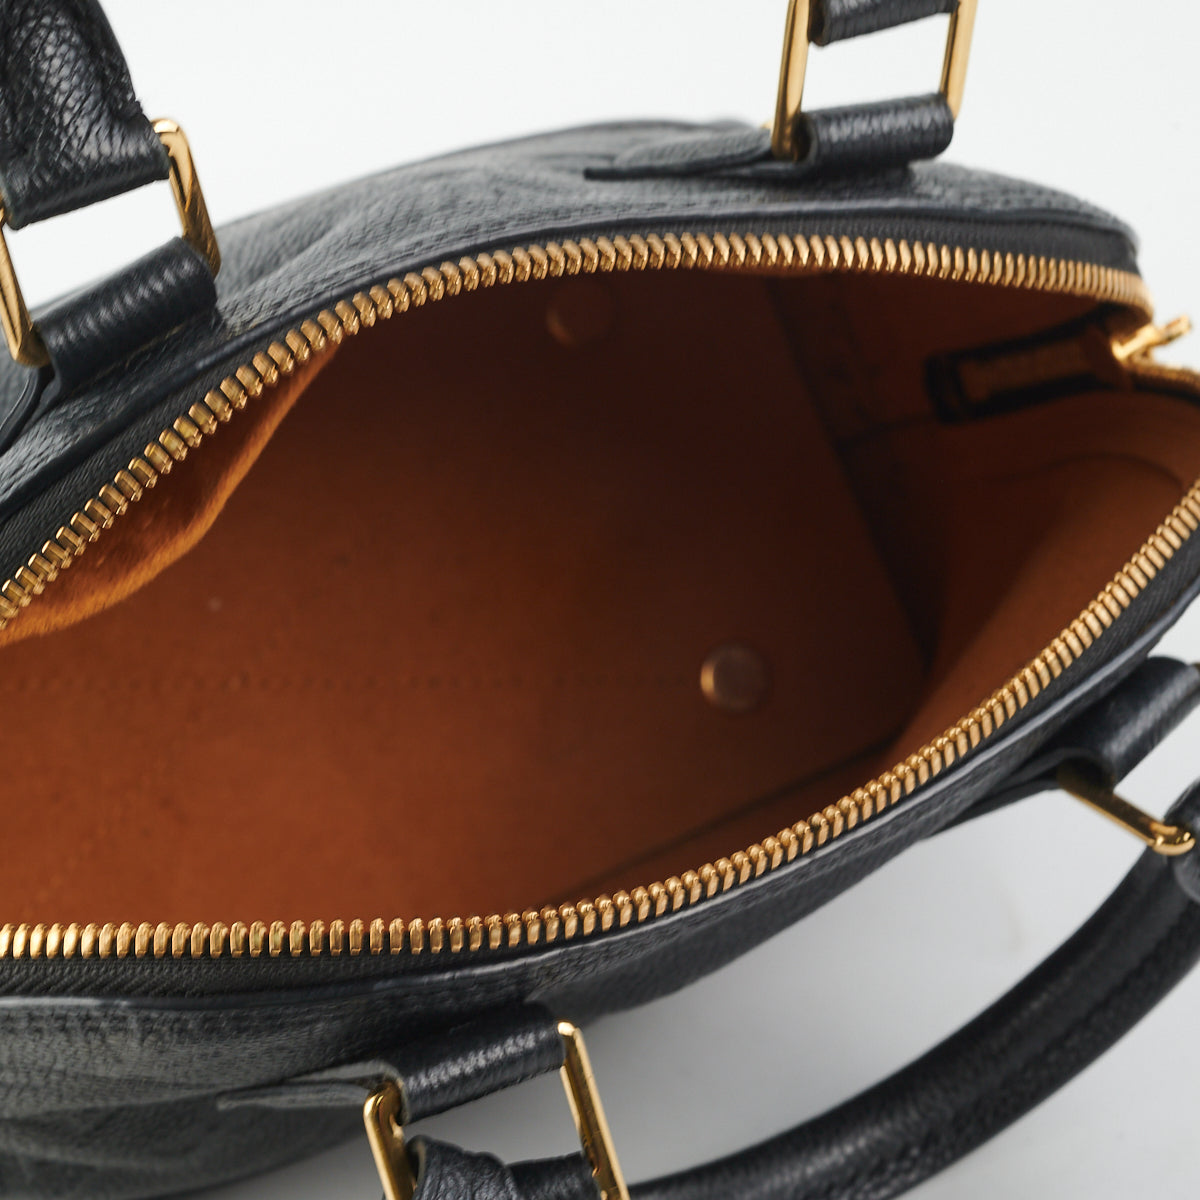 Louis Vuitton - Neo Alma BB Monogram Empreinte Leather Black - Price $